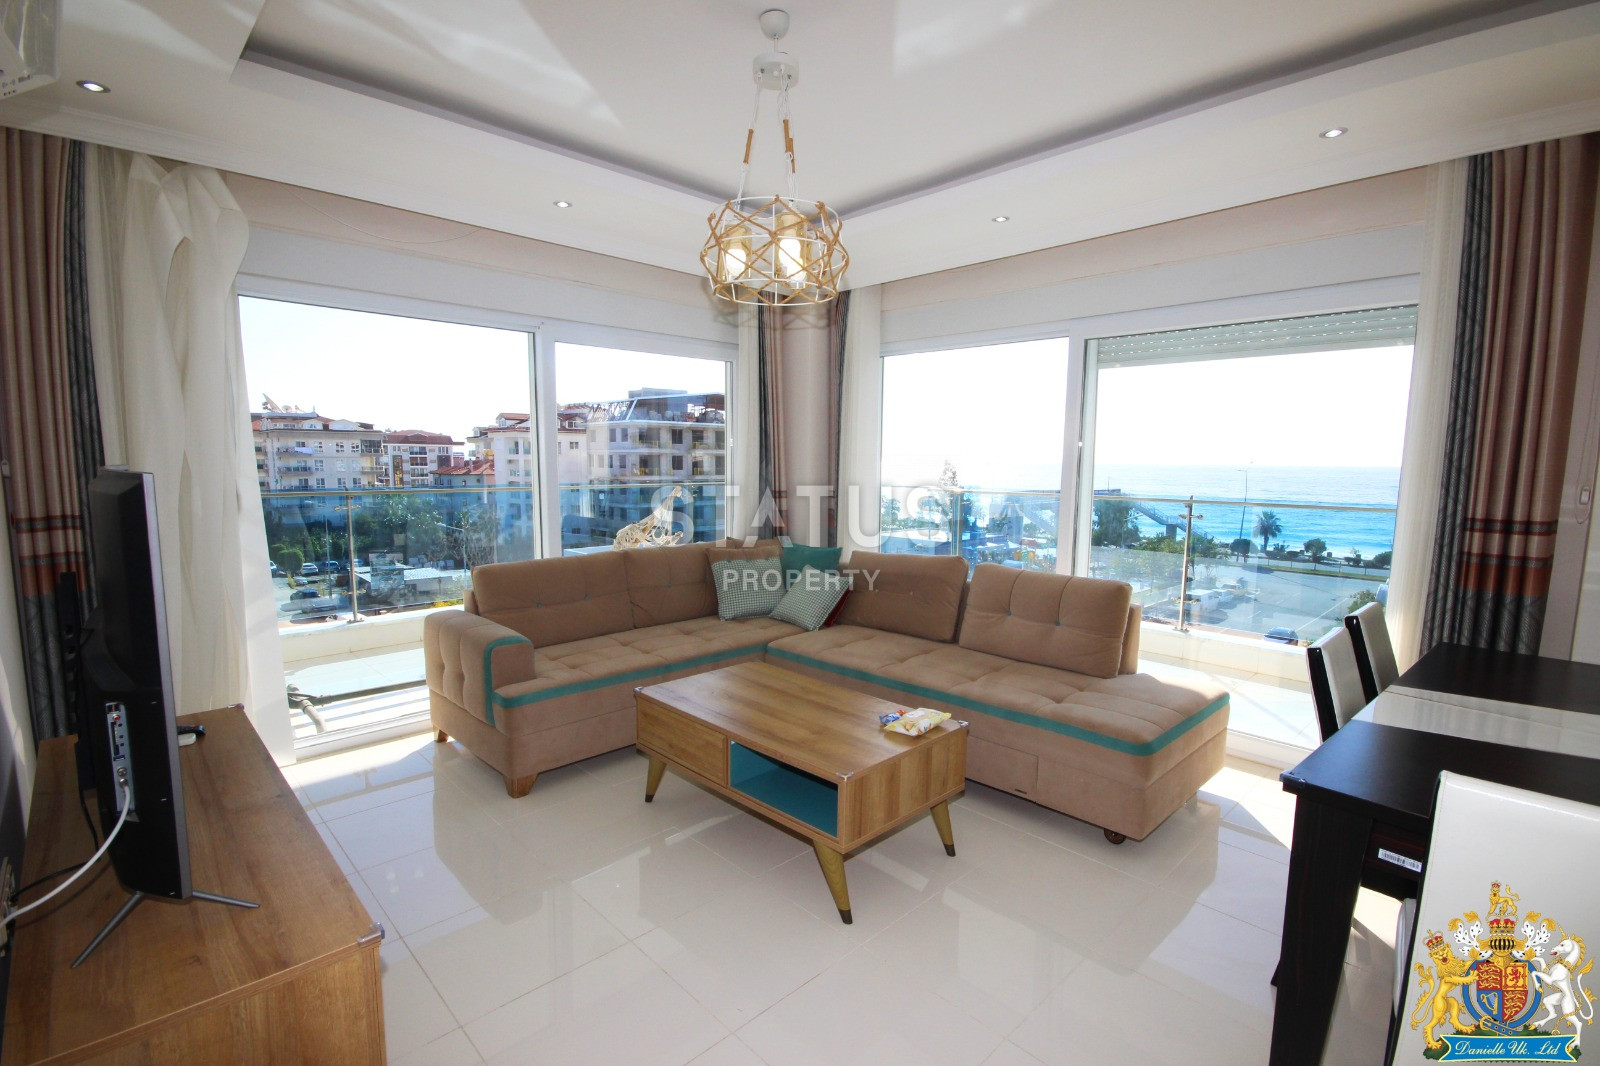 Комфортабельные апартаменты 4+1 с видом на Средиземное море в районе Кестель, 220 кв.м. фото 1